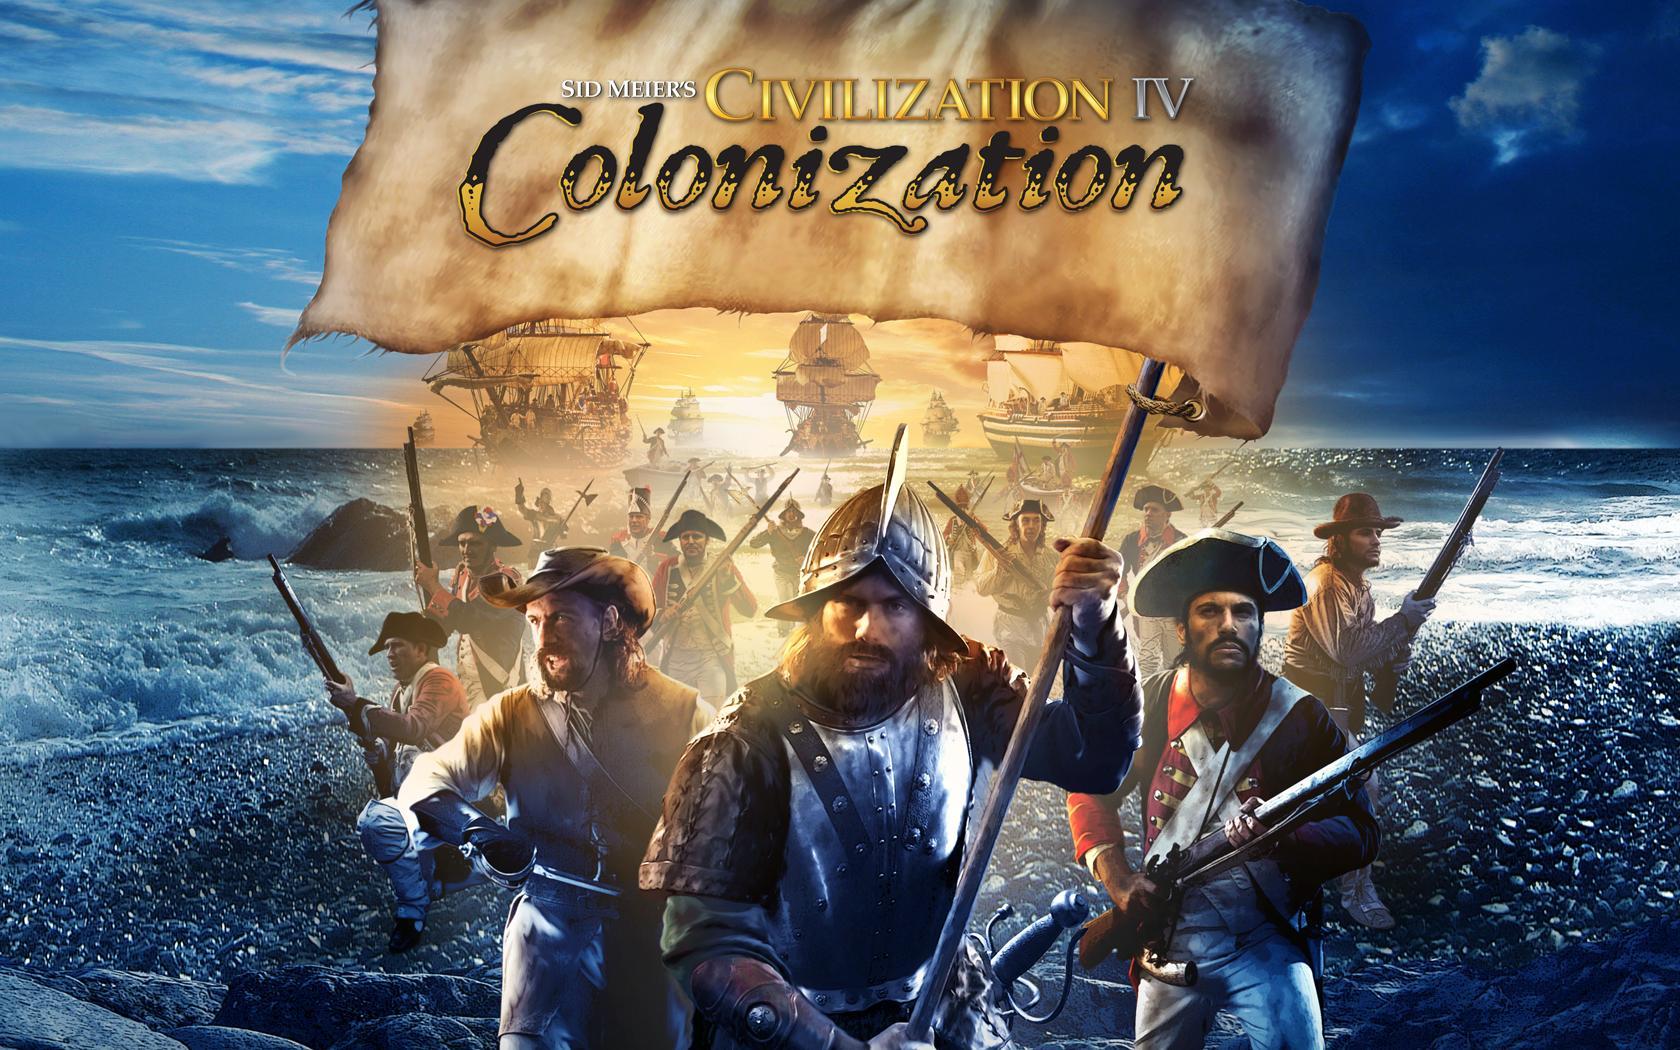 Picture Sid Meier’s Civilization IV Colonization Games